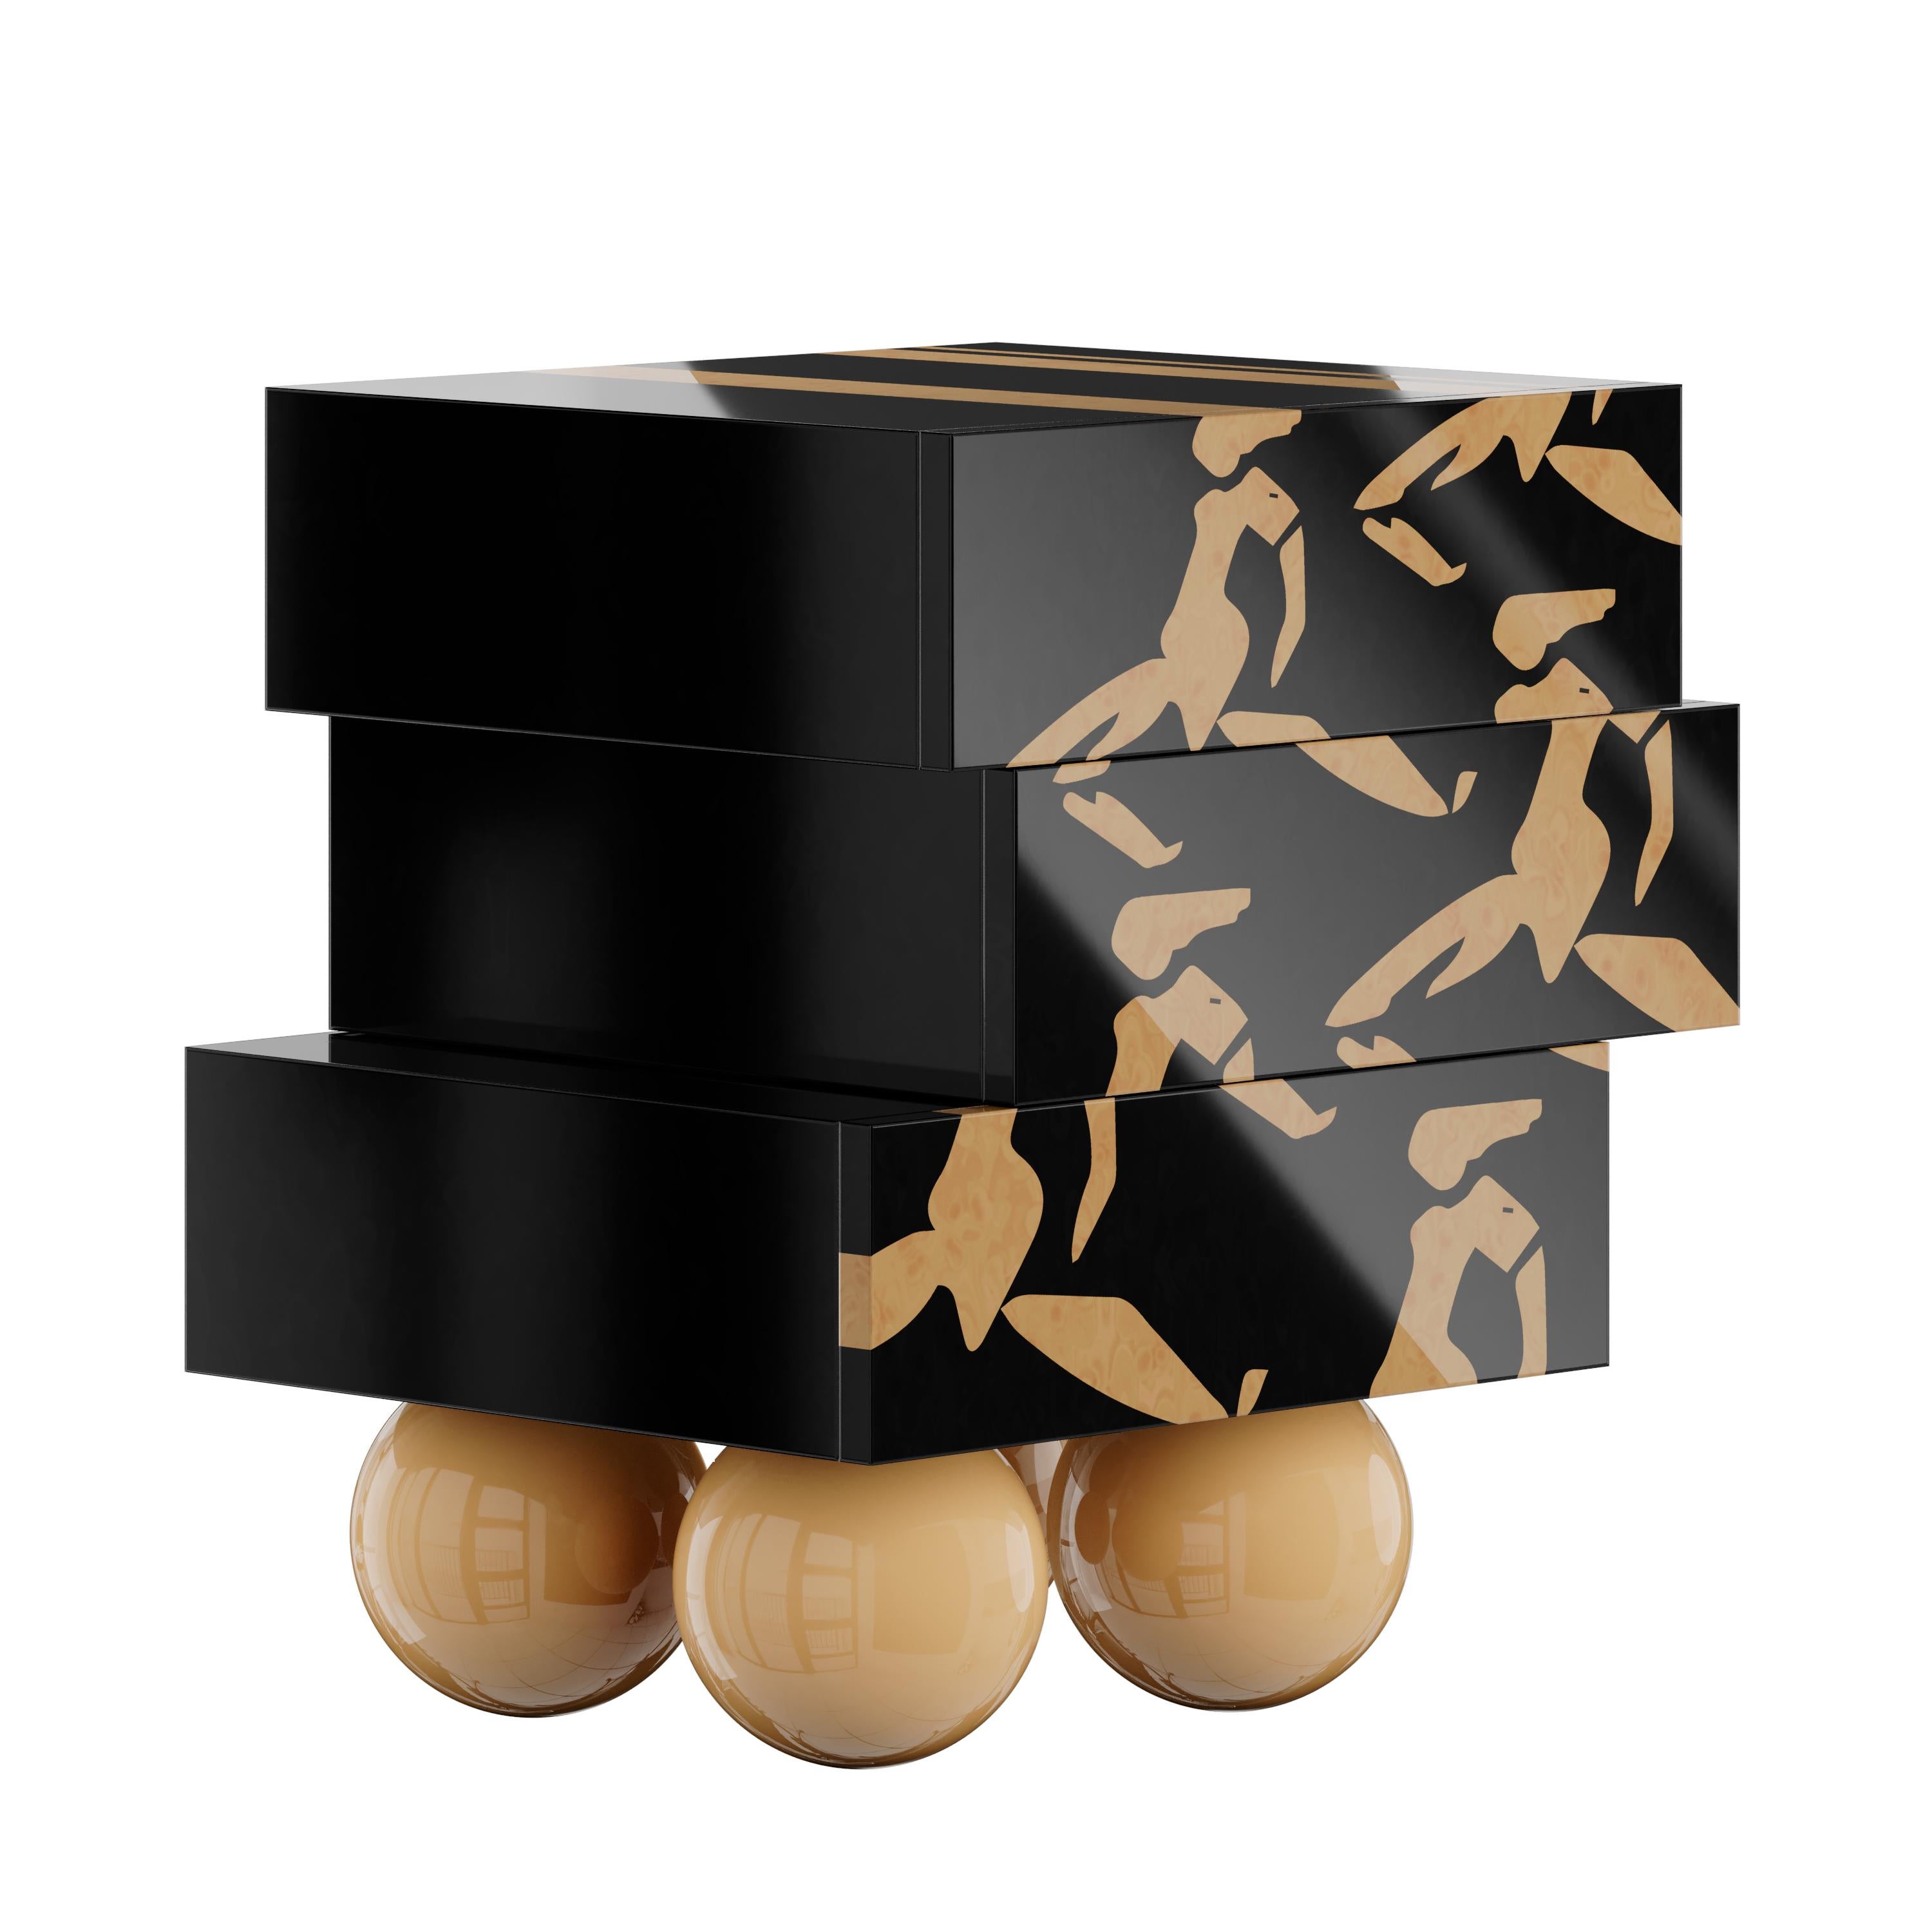 La table de chevet Nice est la quintessence du design moderne. Sa silhouette dynamique présente trois tiroirs reposant sur quatre pieds de sphères en bois. Le design géométrique exceptionnel de cette table de nuit moderne lui permet de devenir une